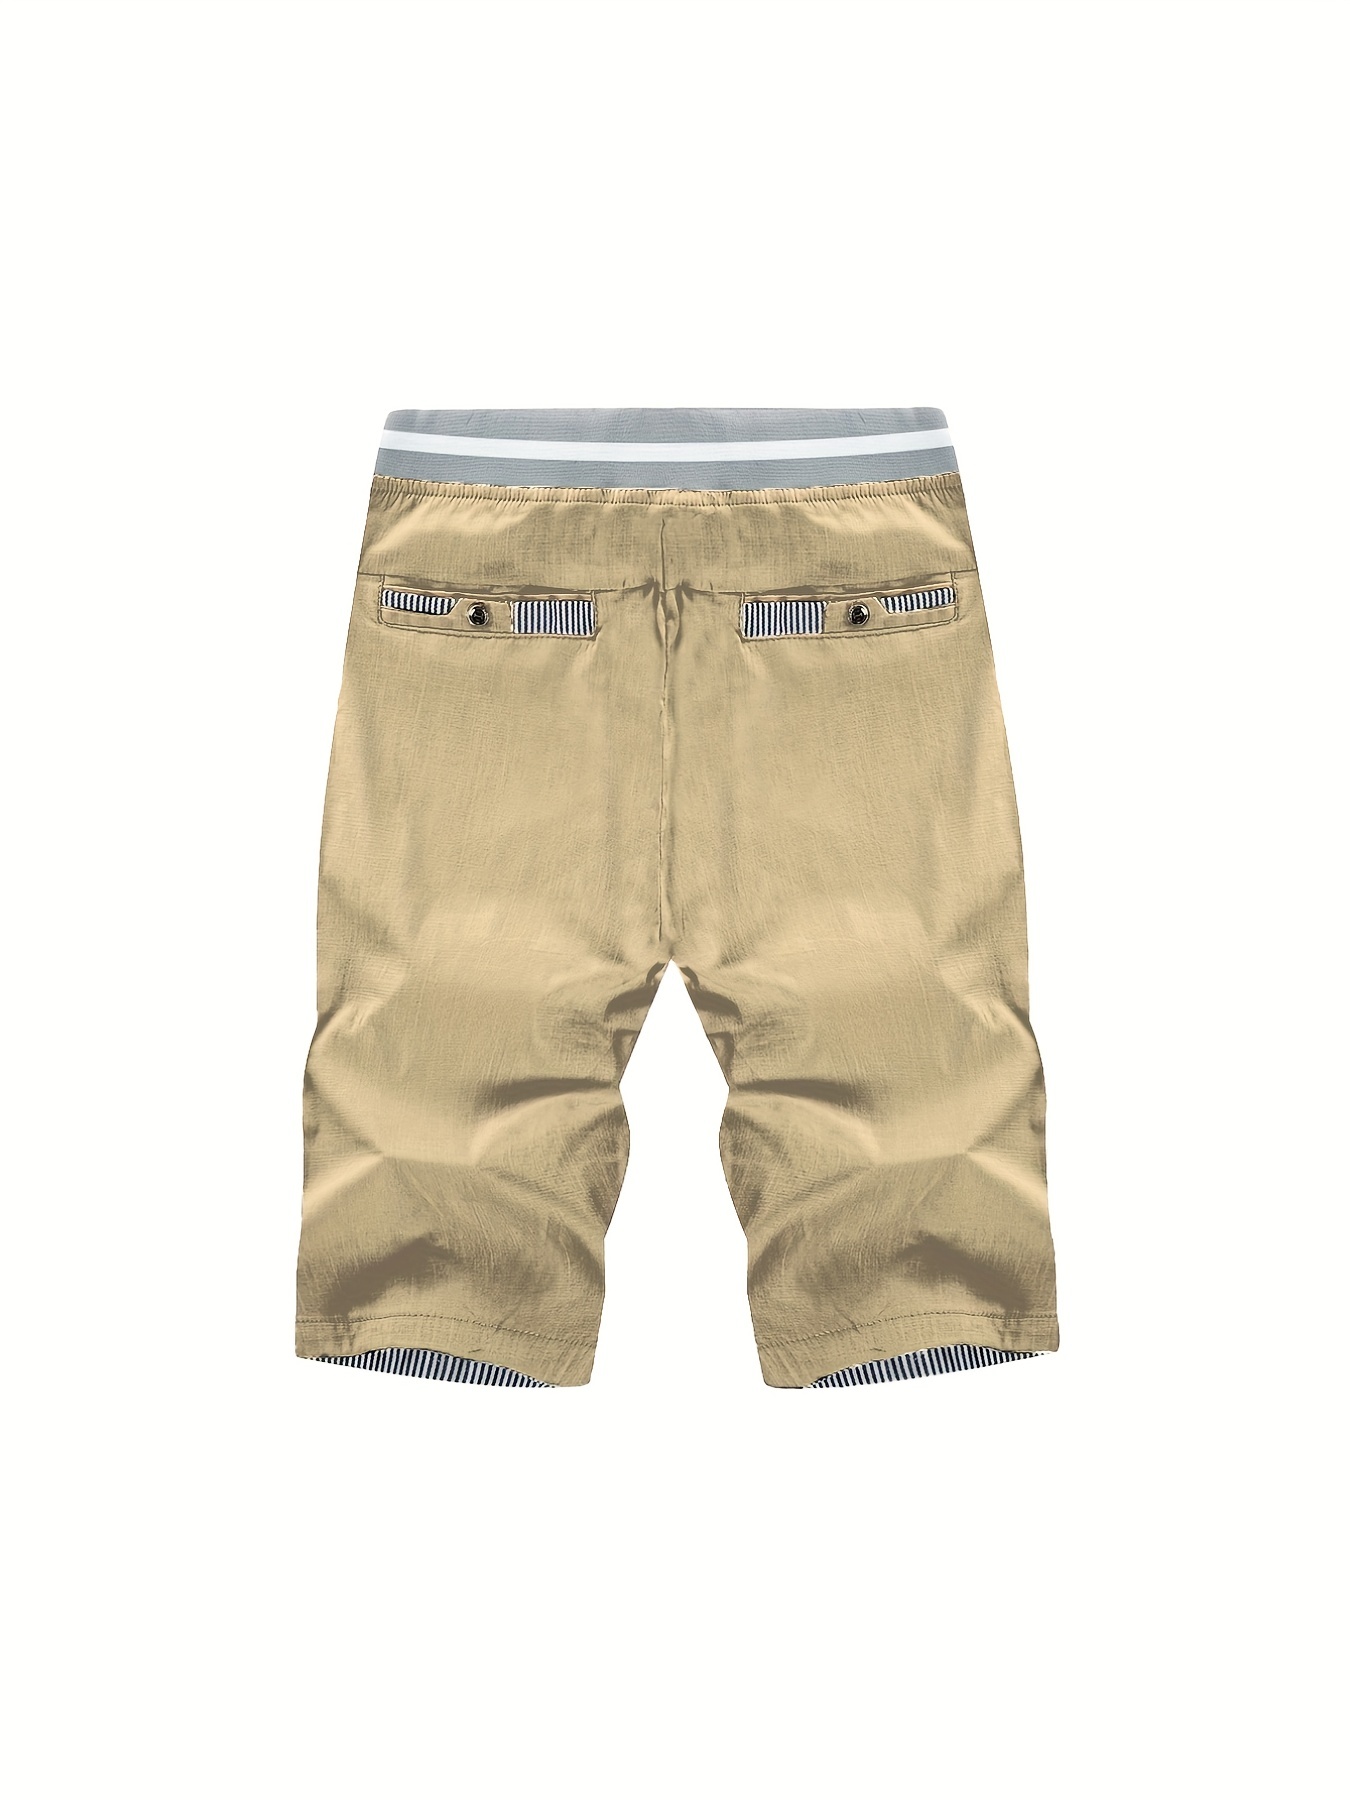 Pantalones Cortos Casuales de Verano para Hombres y Bolsillos